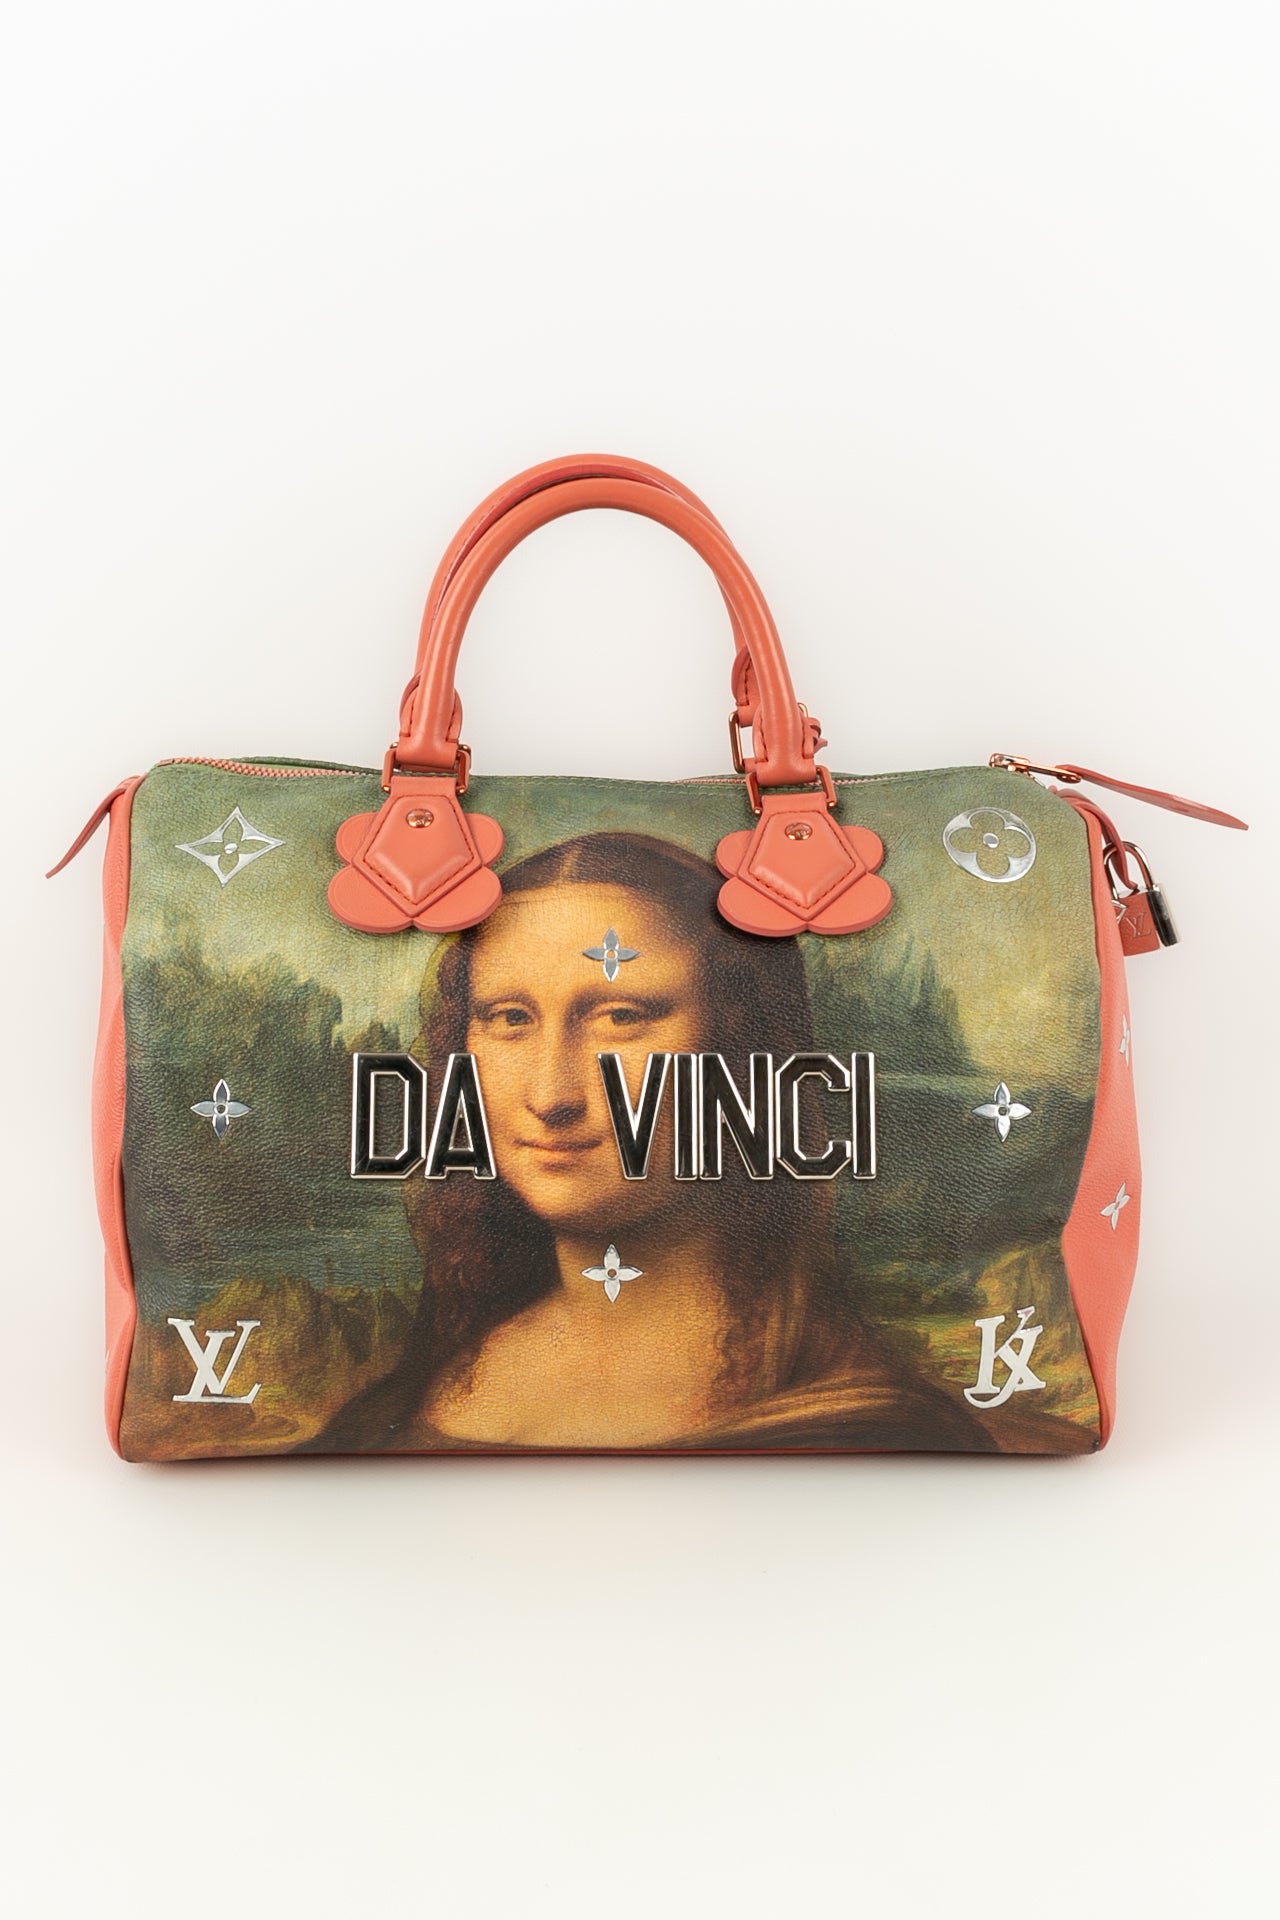 Sac "Da Vinci" Louis Vuitton X Jeff Koons 